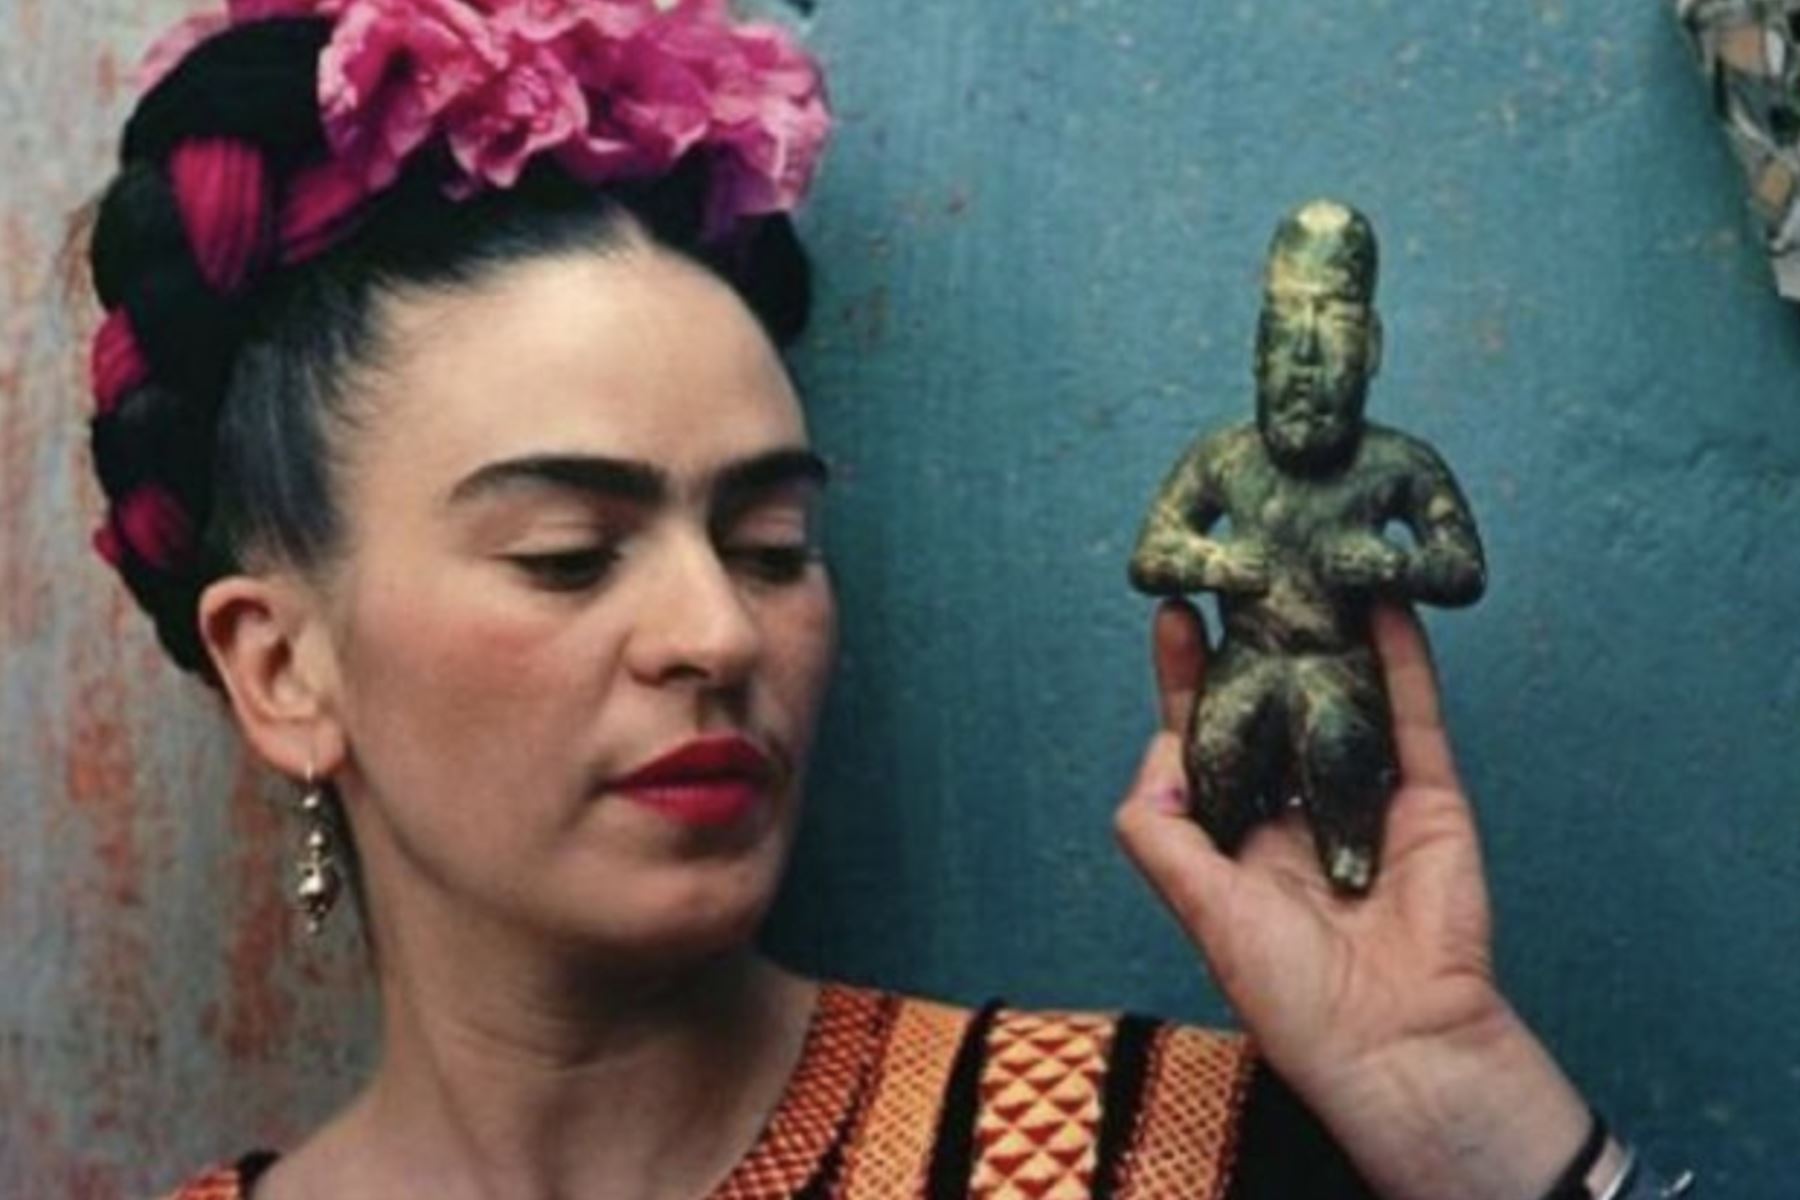 Frida Kahlo (Pintora).
“Y tú bien sabes que el atractivo sexual en las mujeres se acaba voladamente, y después no les queda nada más que lo que tengan en su cabeza para poder defenderse en esta cochina vida del carajo”. Foto: AFP